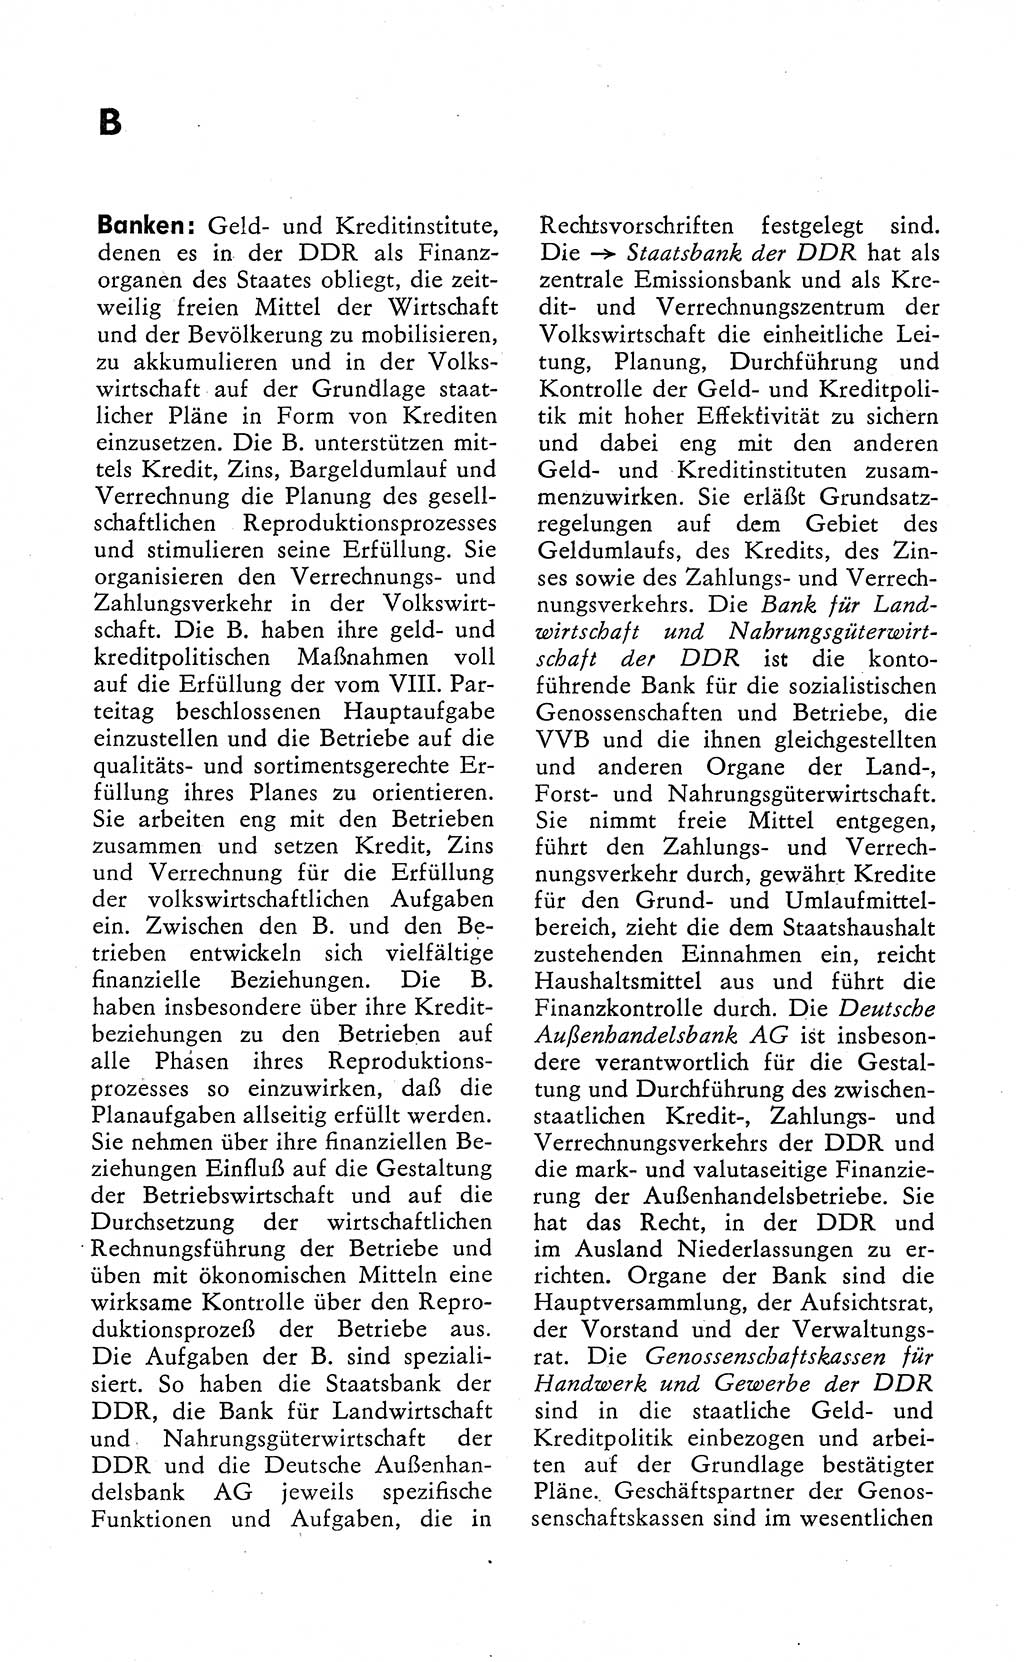 Wörterbuch zum sozialistischen Staat [Deutsche Demokratische Republik (DDR)] 1974, Seite 40 (Wb. soz. St. DDR 1974, S. 40)